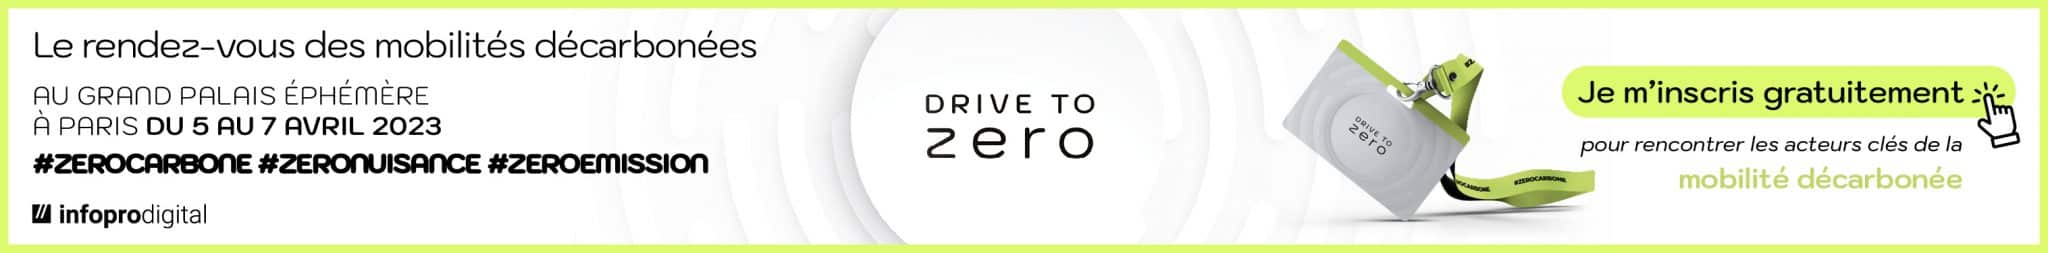 Drtive to zero 8–04